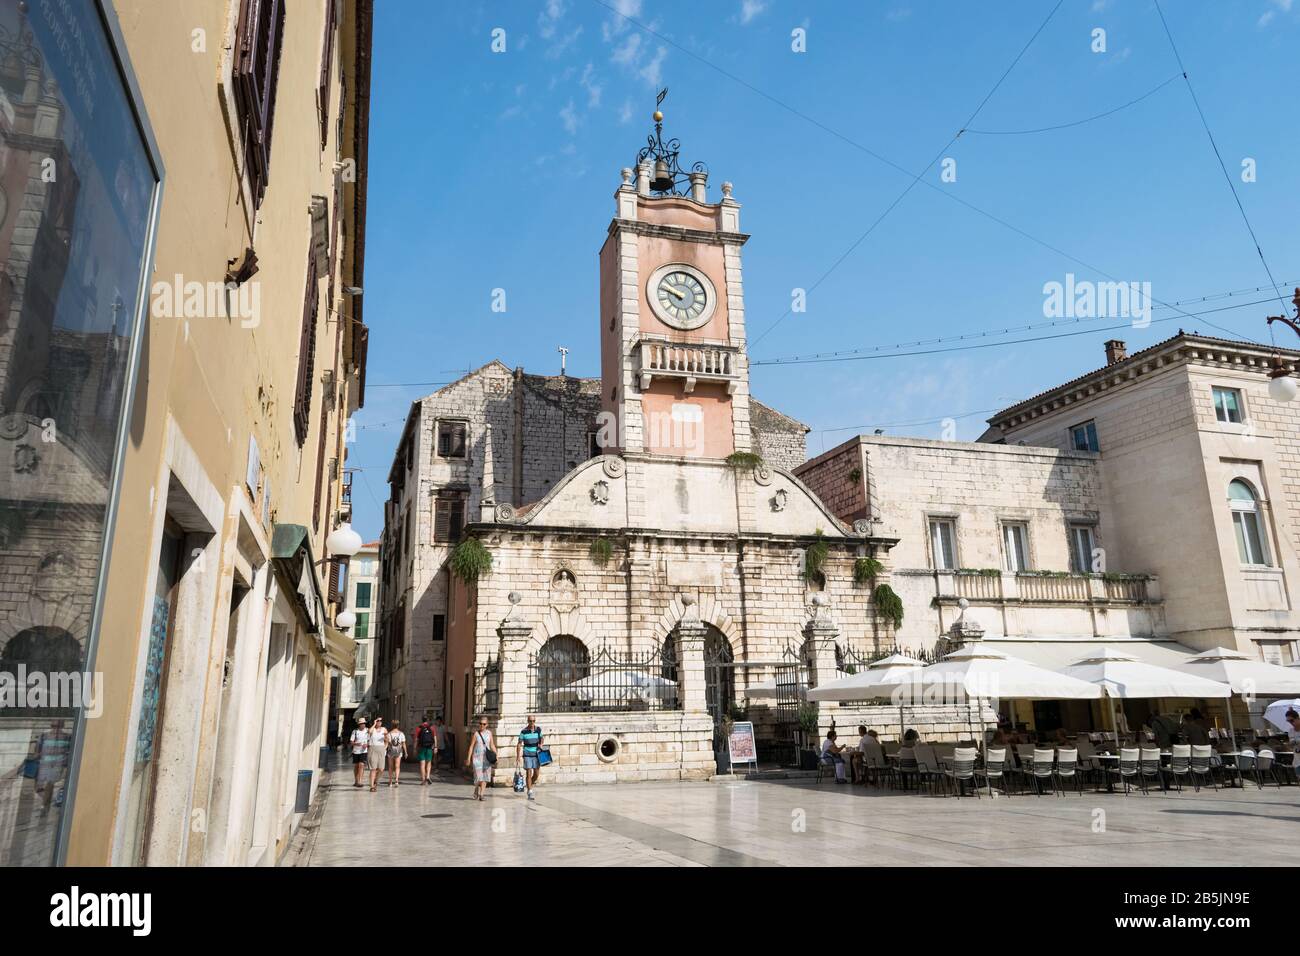 Guardia Casa o City Sentinel (Gradska Straza), torre dell'orologio nel centro storico di Zara, Croazia. Foto Stock